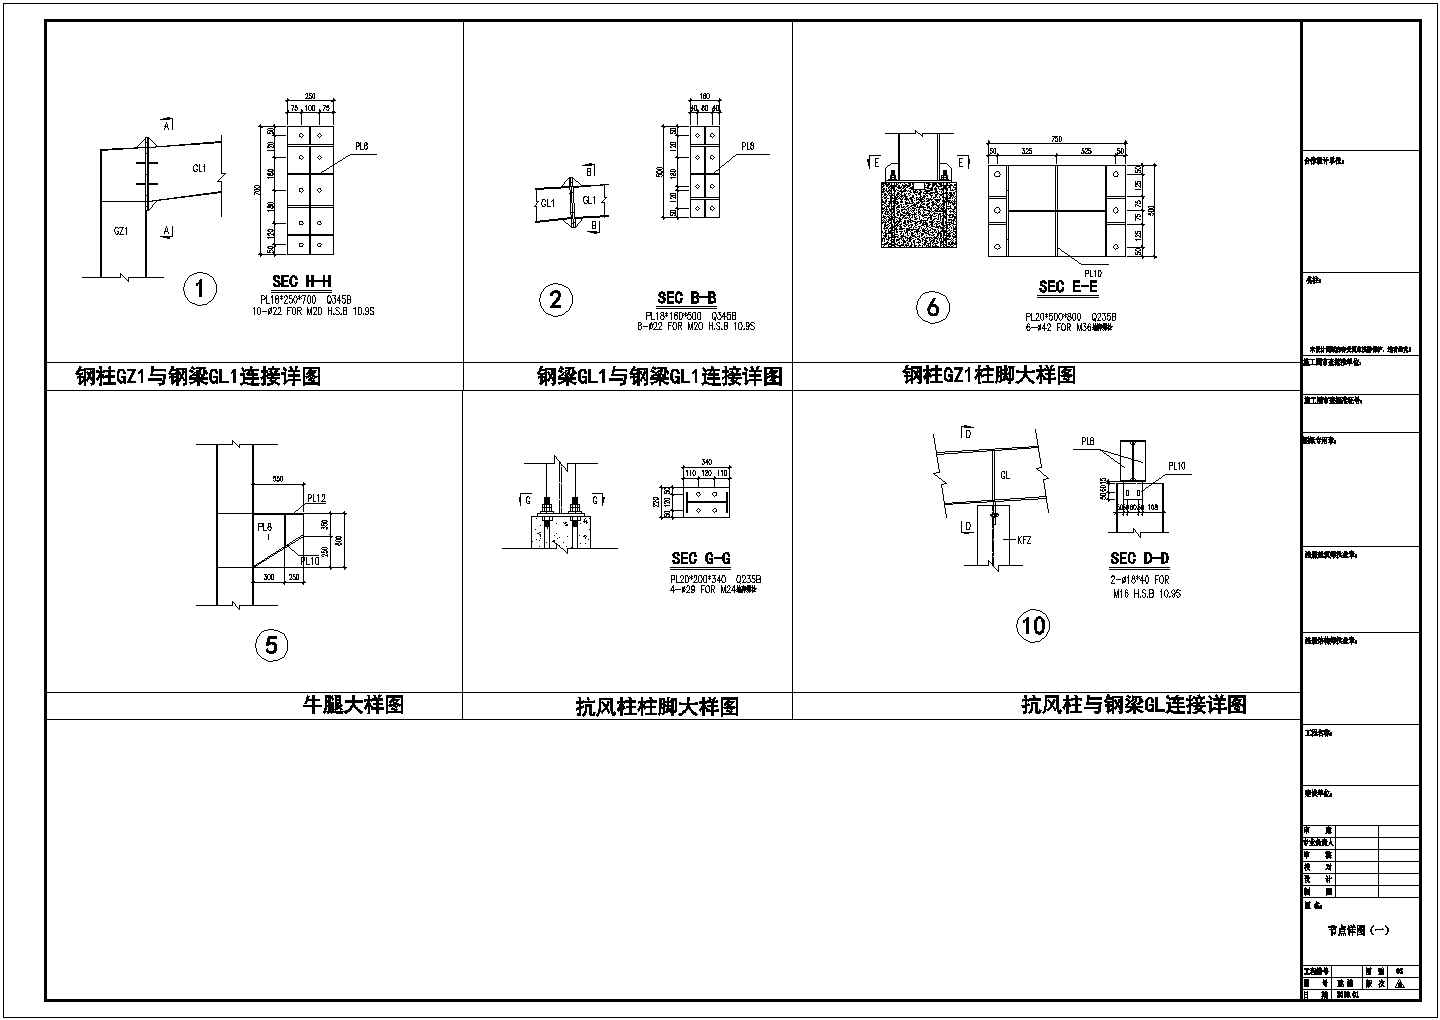 黄冈福连建施方案详细建筑施工图